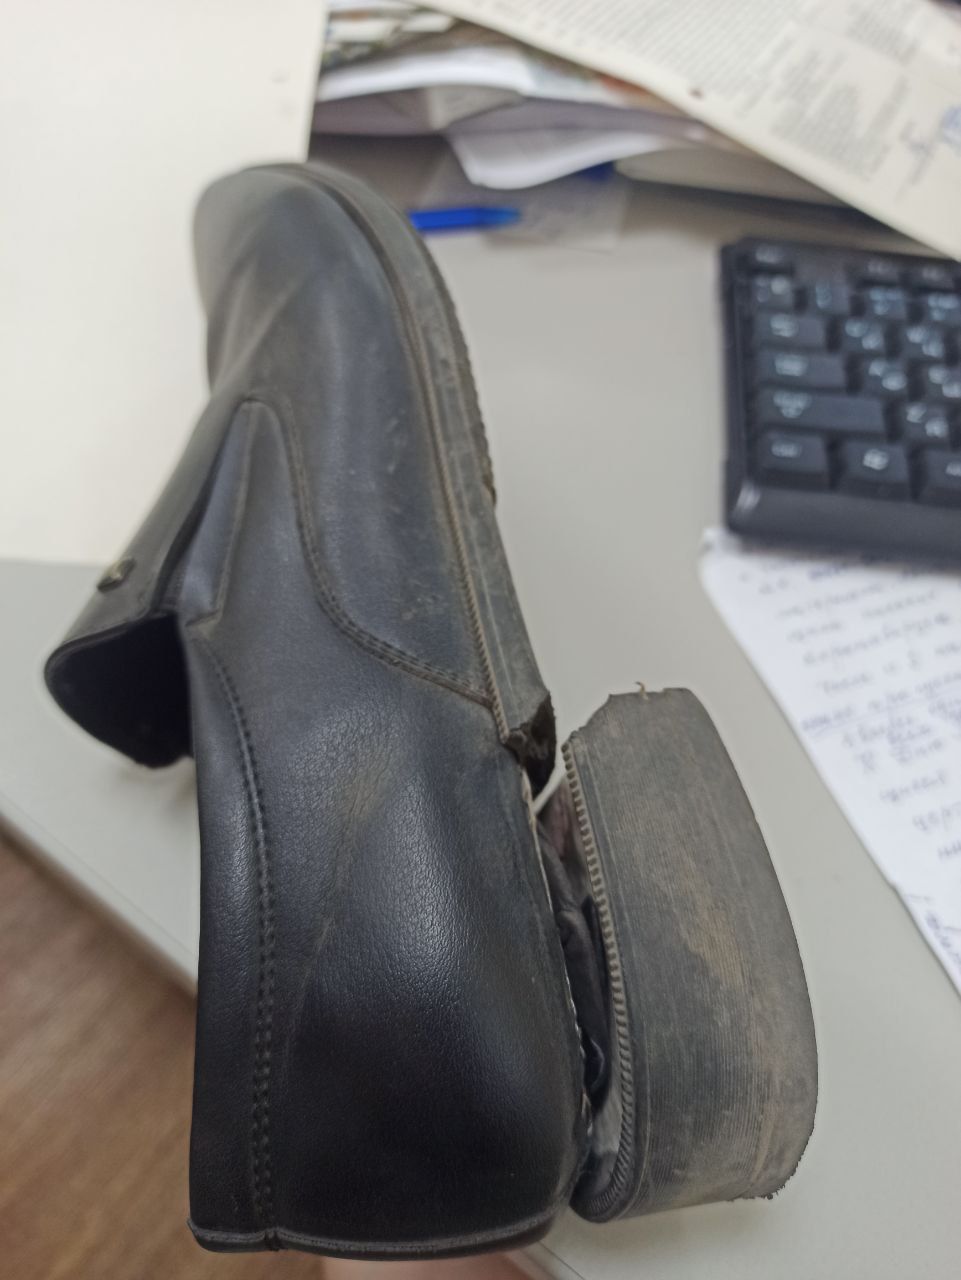 Купил туфли в мае, в начале июля обе подошвы лопнули. Что ж это за обувь такая?